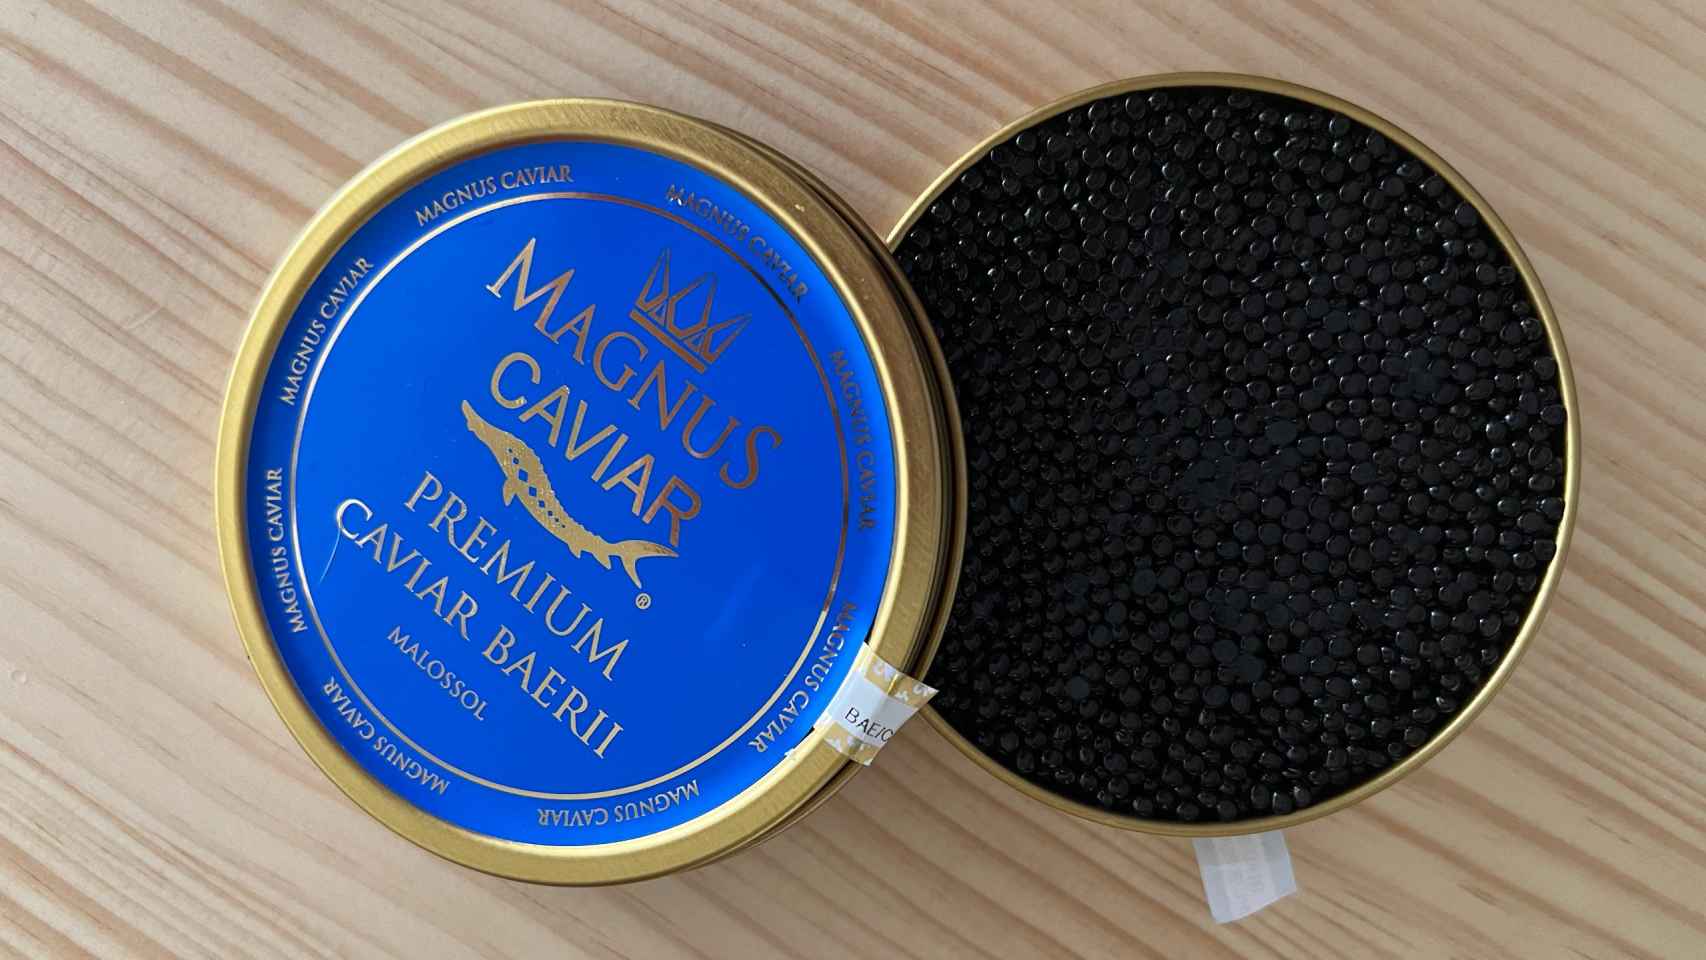 Lata de caviar de esturión Baerii